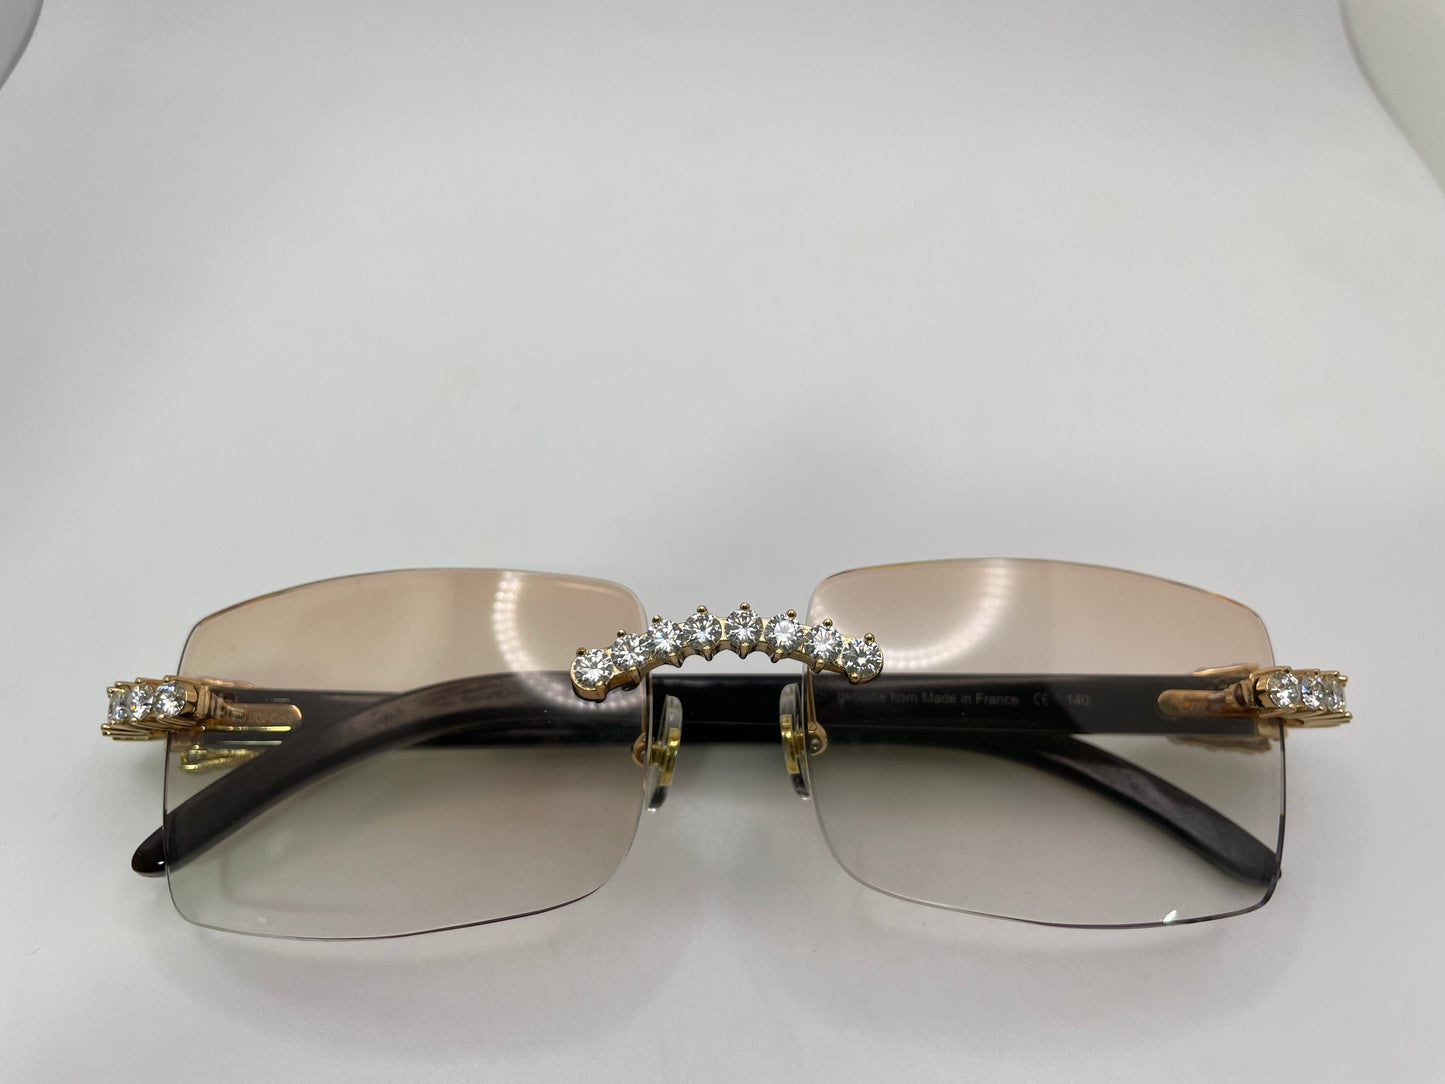 Decor C White Horn with 5pc Set .20 pointer Genuine Cafr Diamond and #10 lenses tintable transition lenses